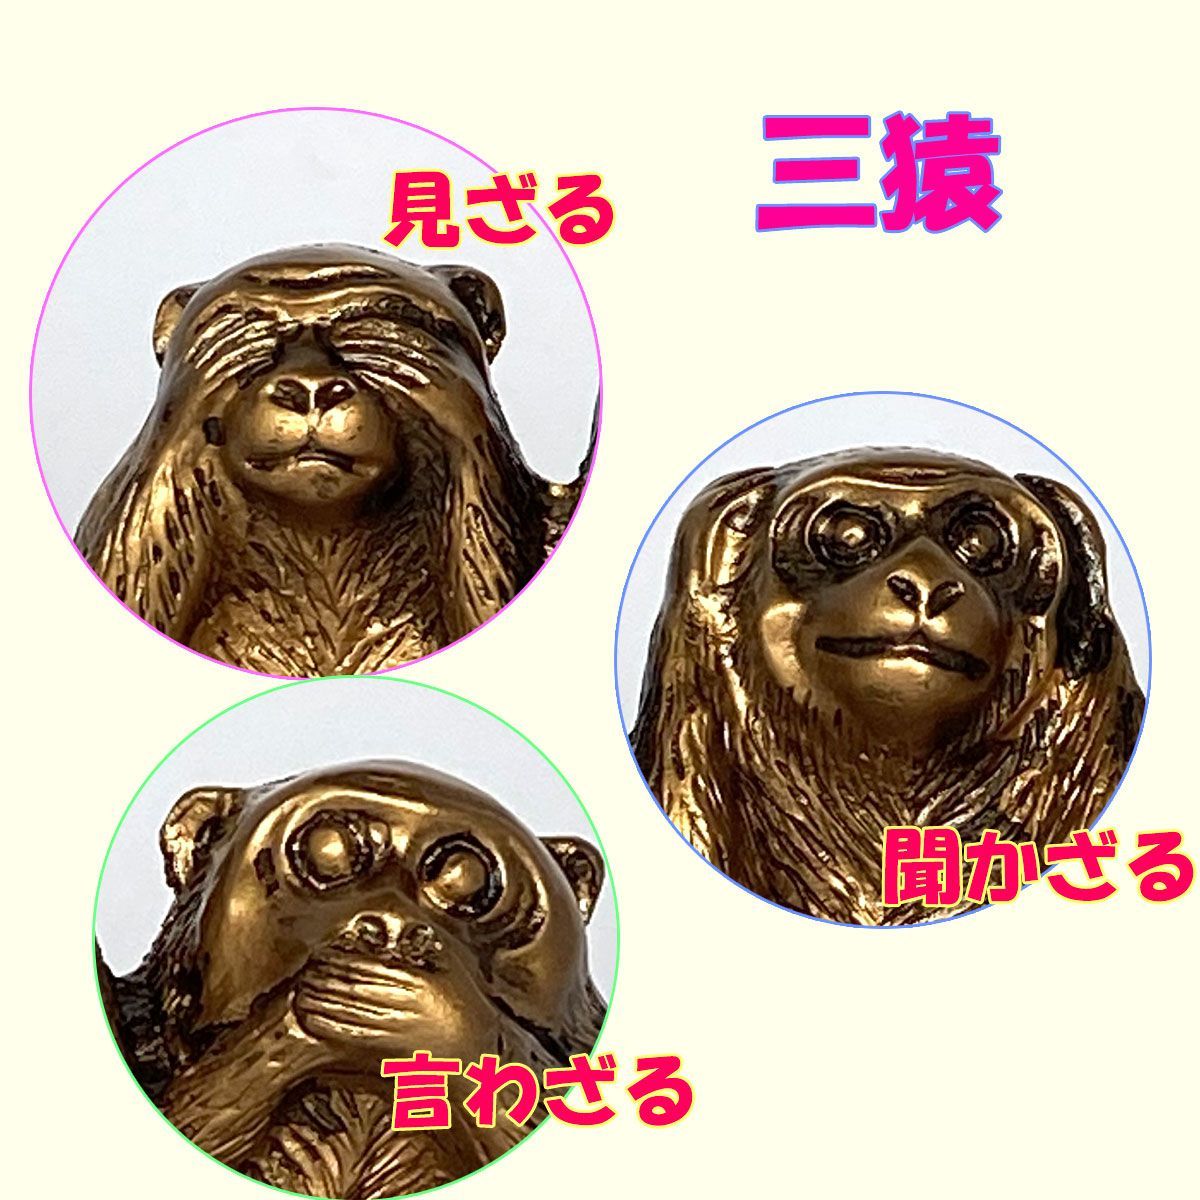 三猿 猿 置物 3匹の猿 見ざる 聞かざる 言わざる 日光 東照宮 インテリア - メルカリ